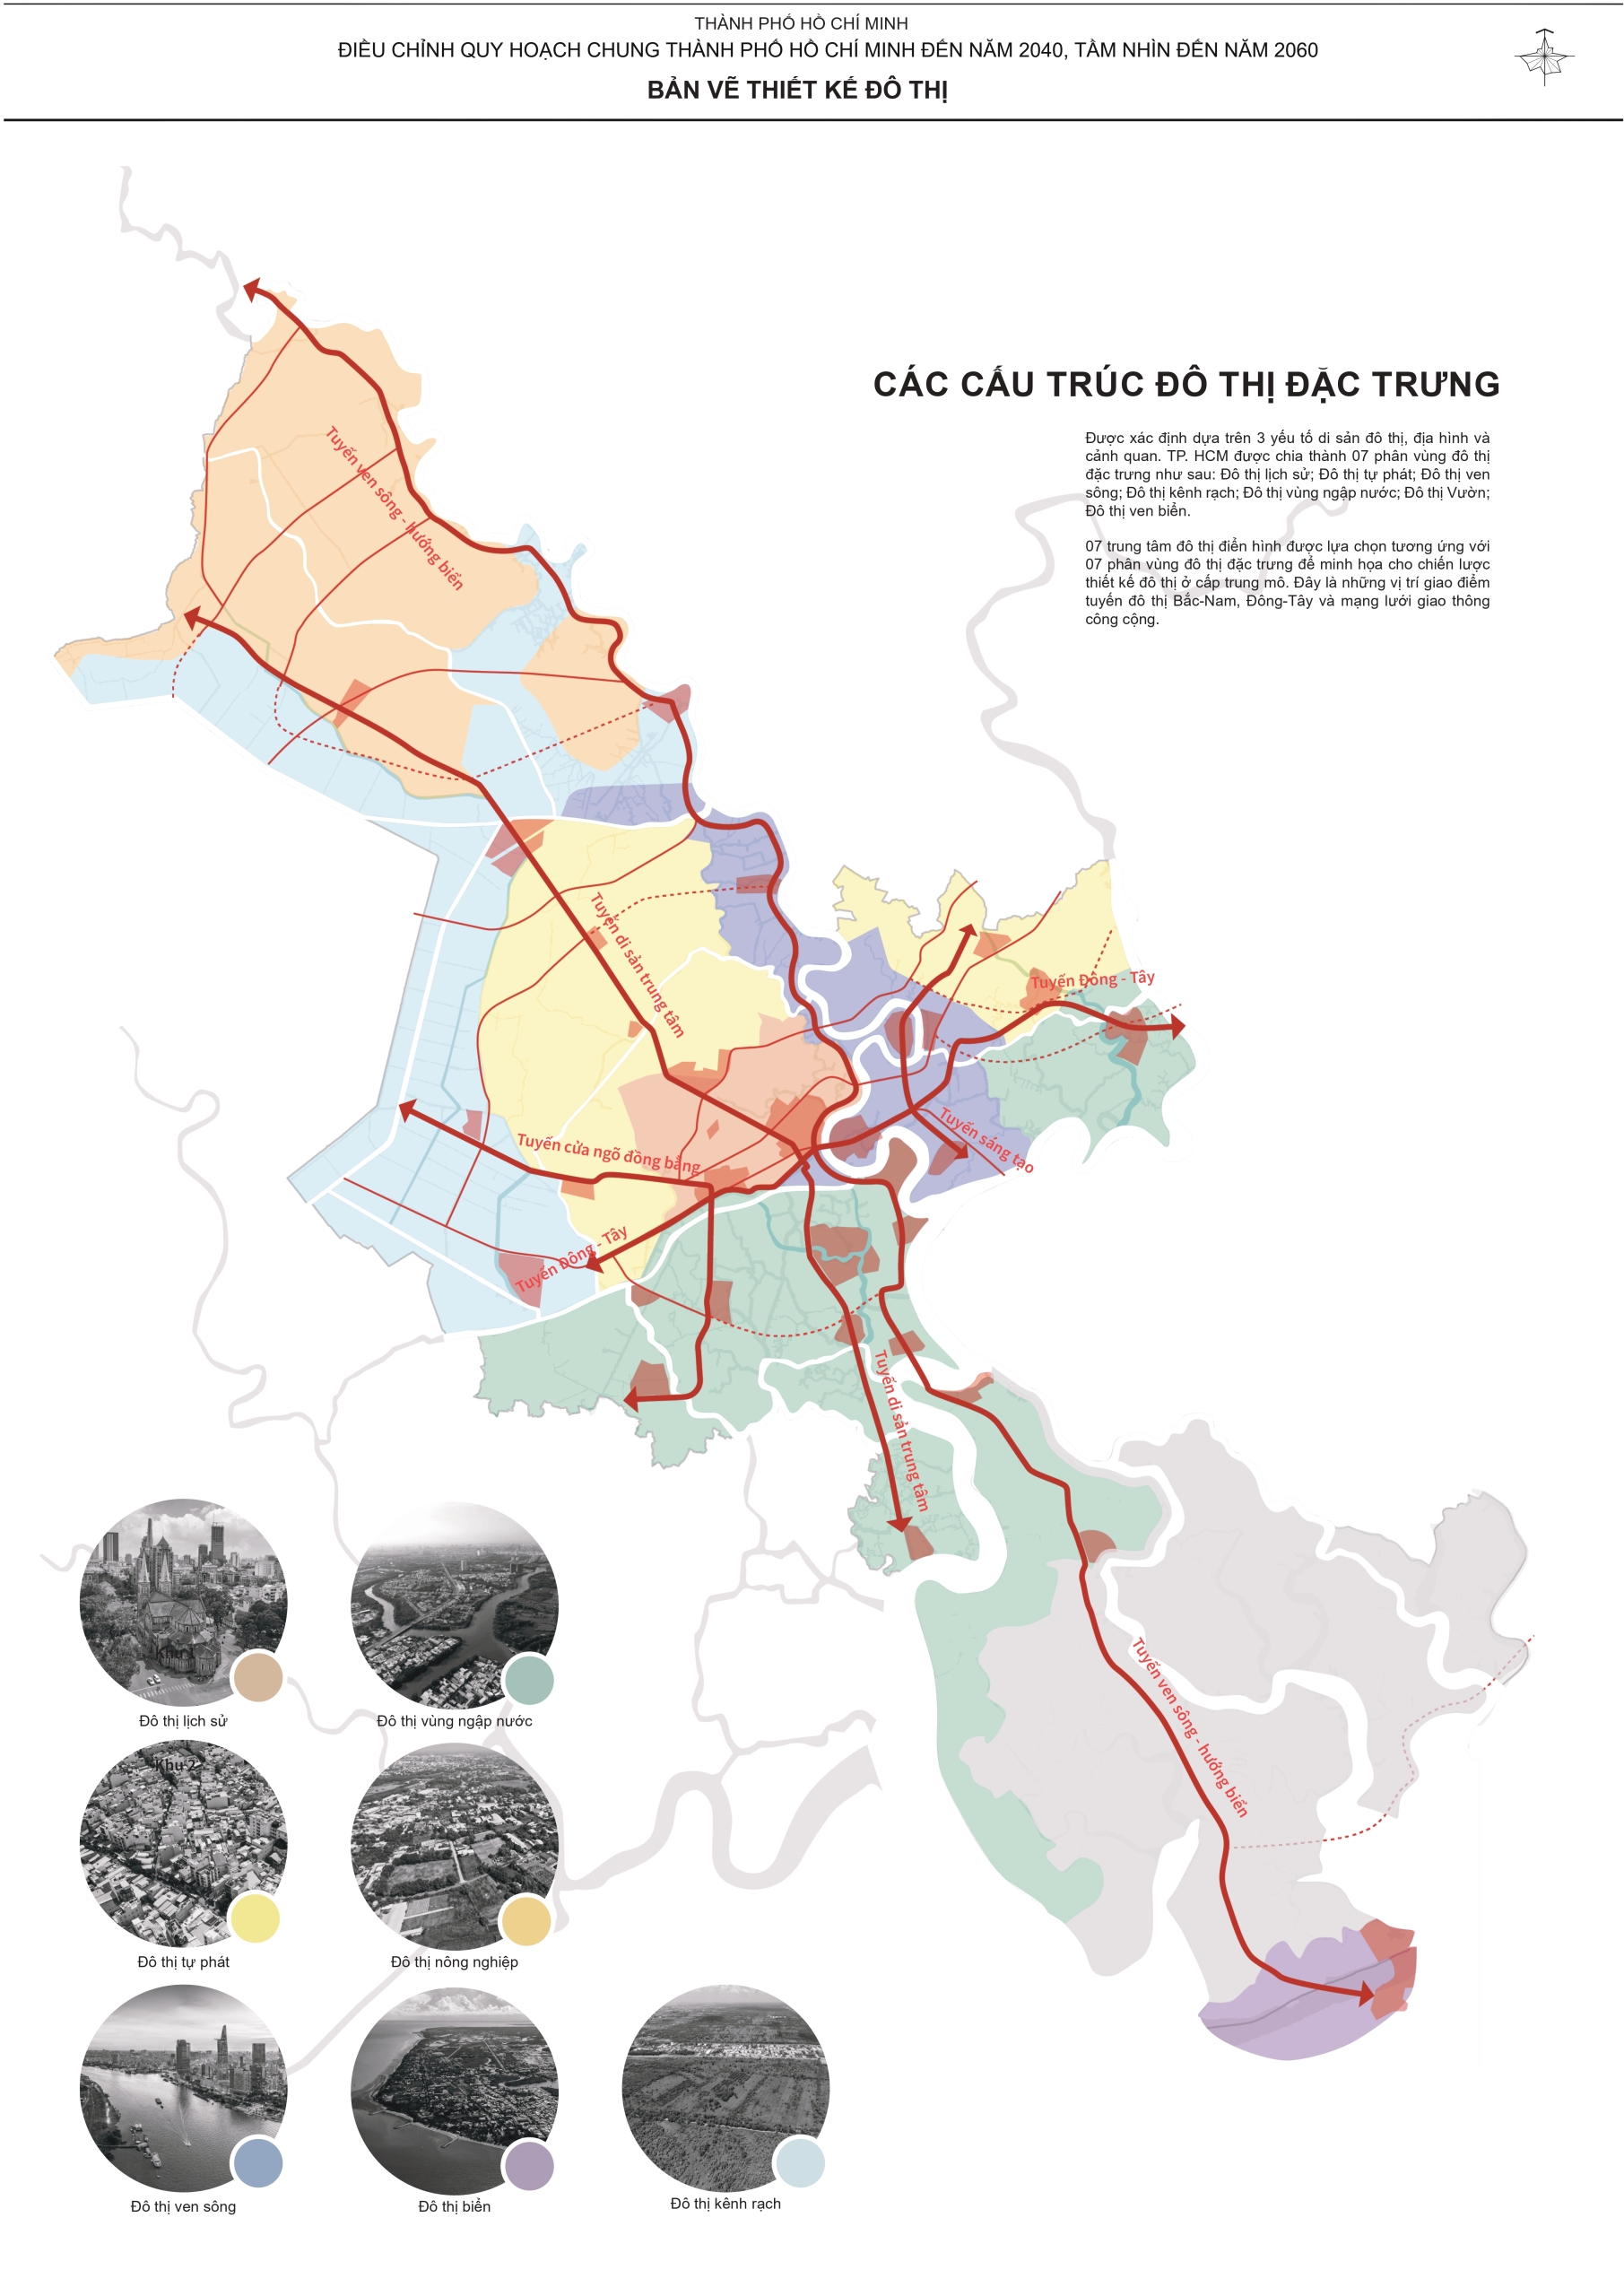 Thông báo về việc lấy ý kiến cộng đồng dân cư về đề án Điều chỉnh Quy hoạch chung Thành phố Hồ Chí Minh đến năm 2040 và tầm nhìn đến năm 2060